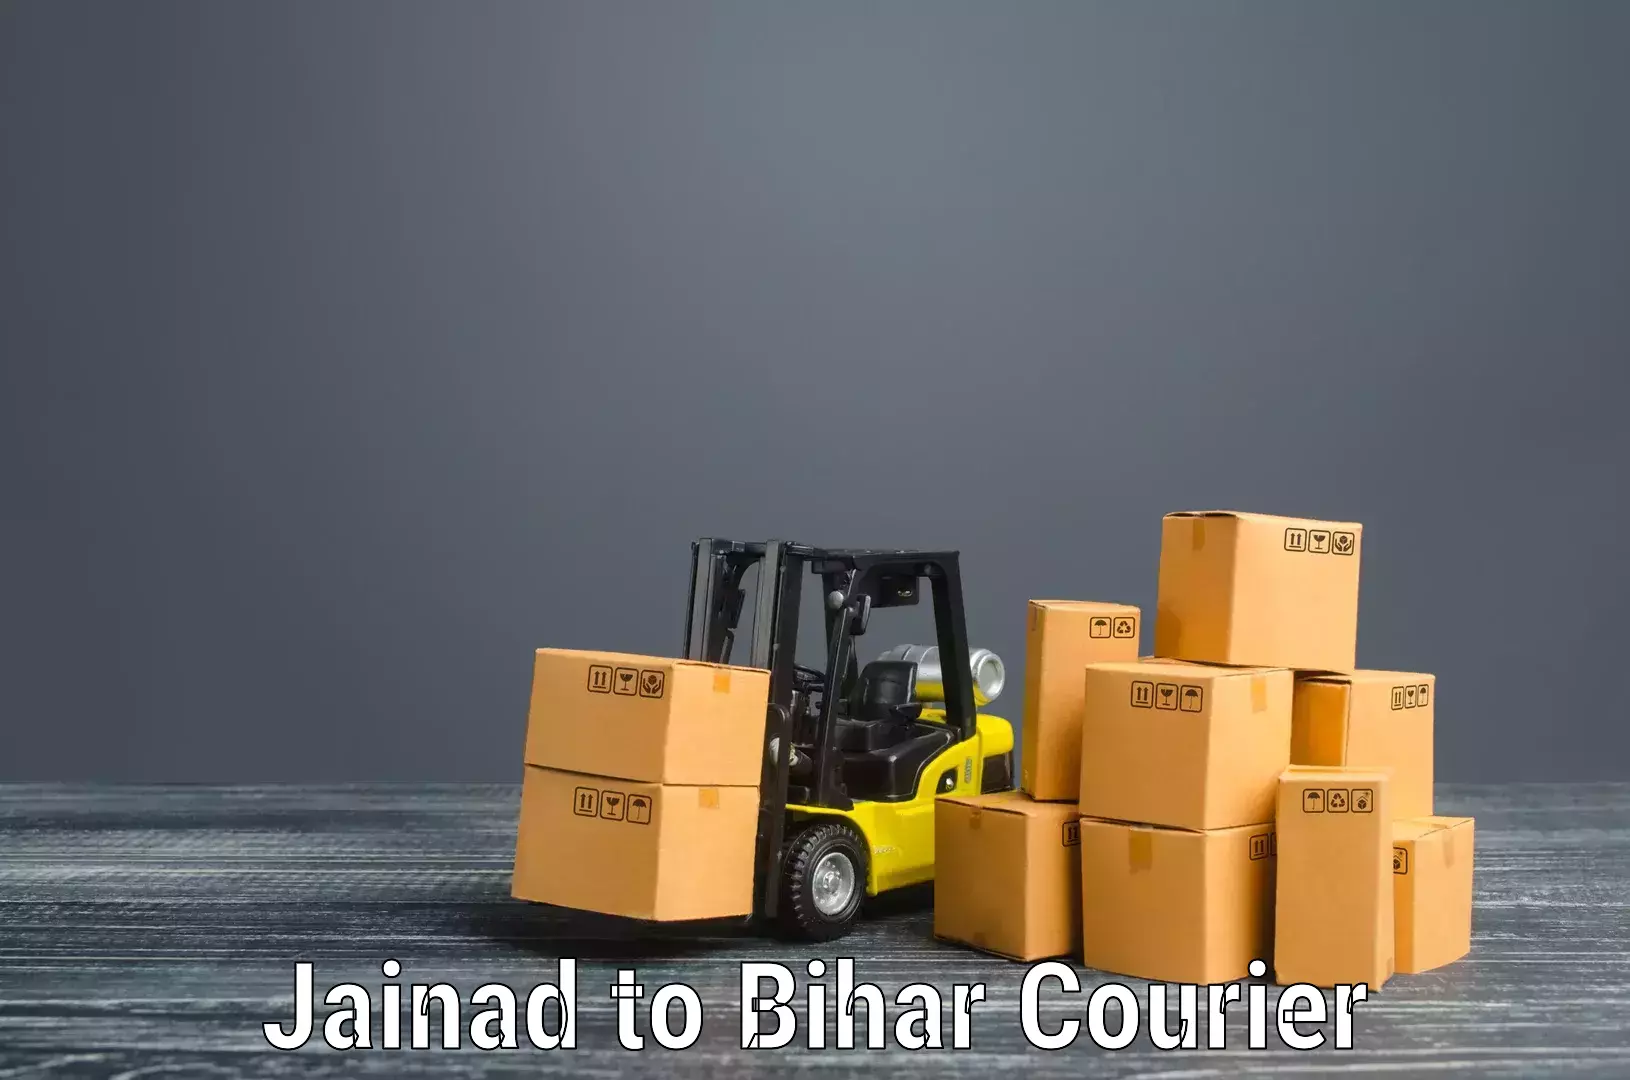 Furniture moving experts Jainad to Bharwara